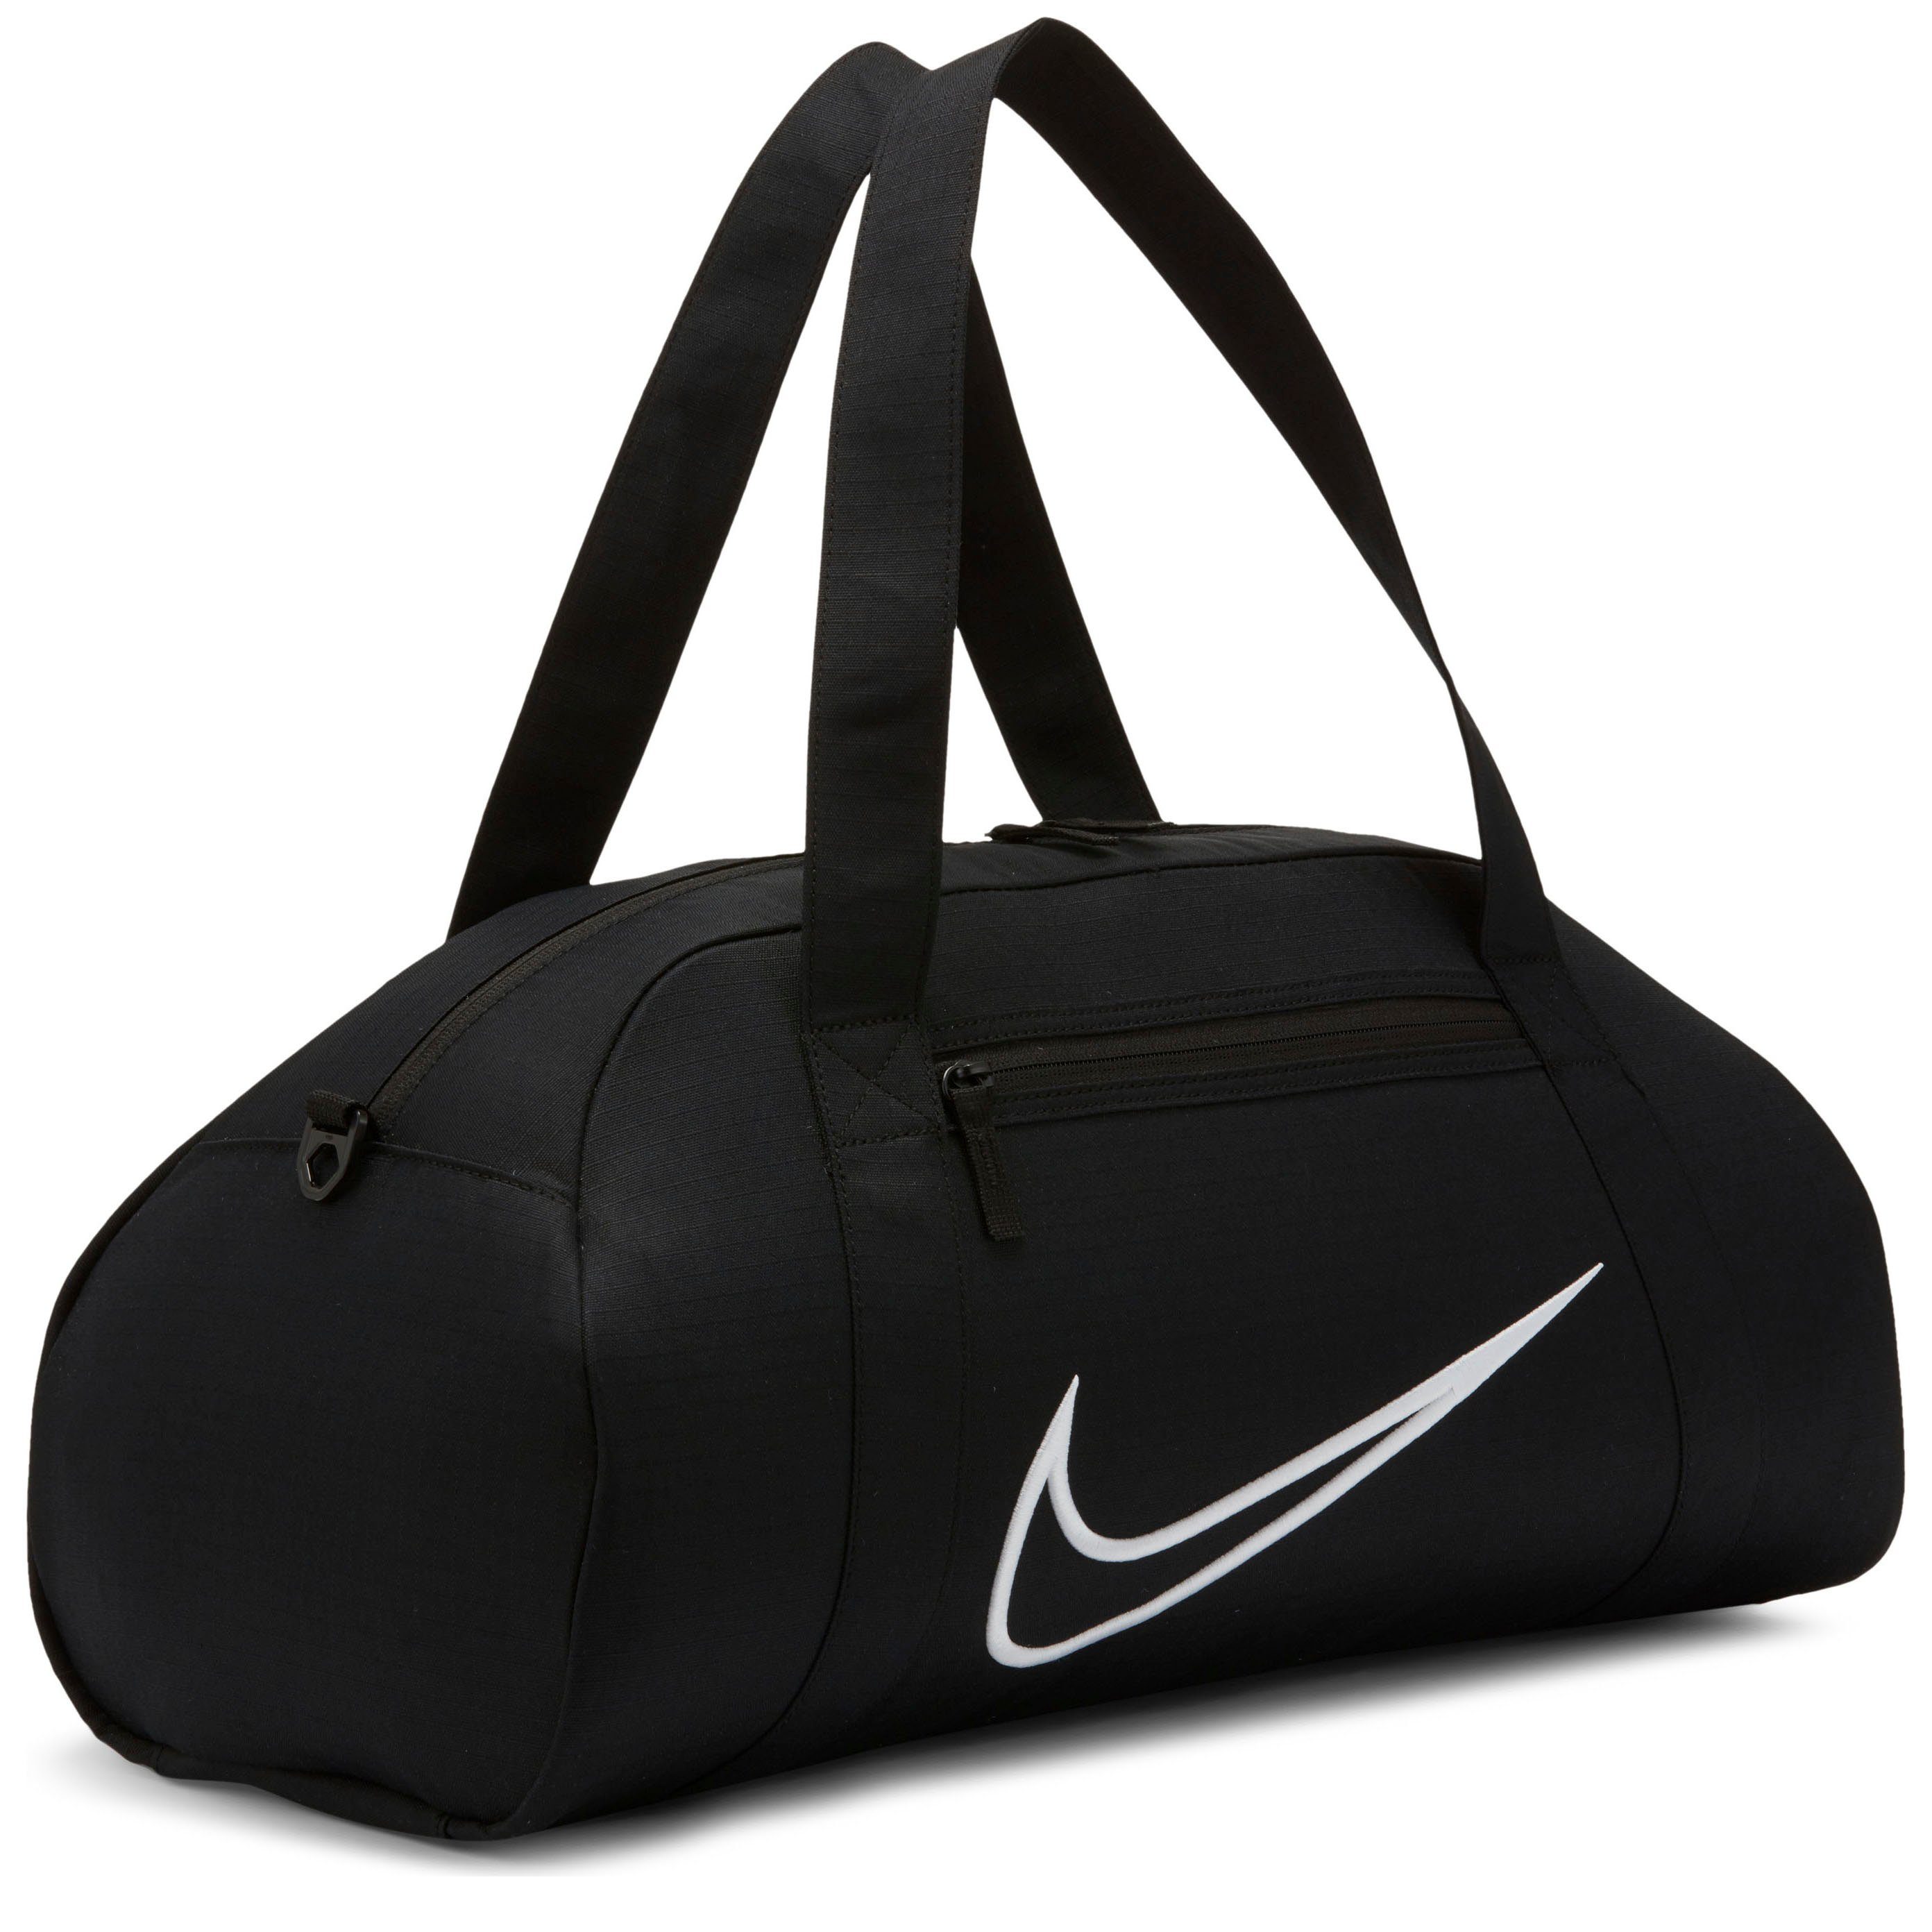 Nike Sporttasche Damen & Trainingstasche online kaufen | OTTO